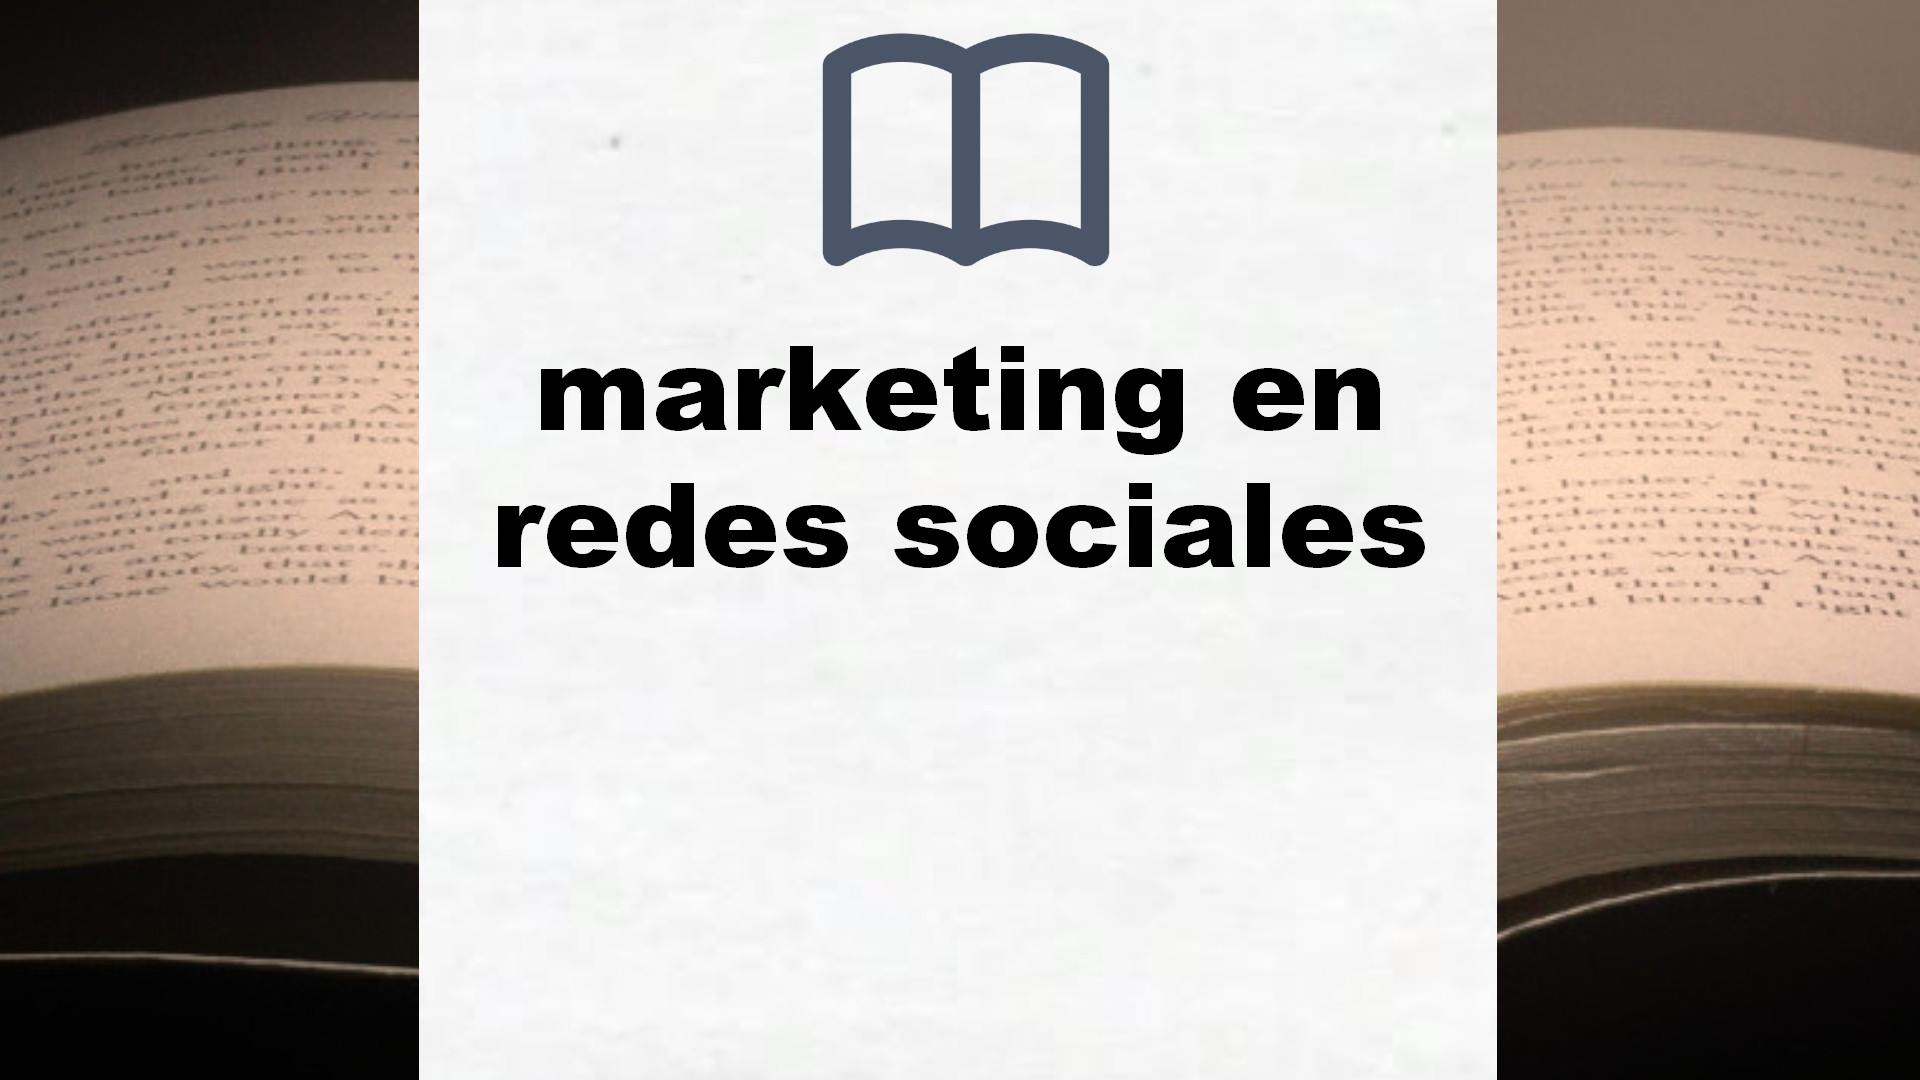 Libros sobre marketing en redes sociales